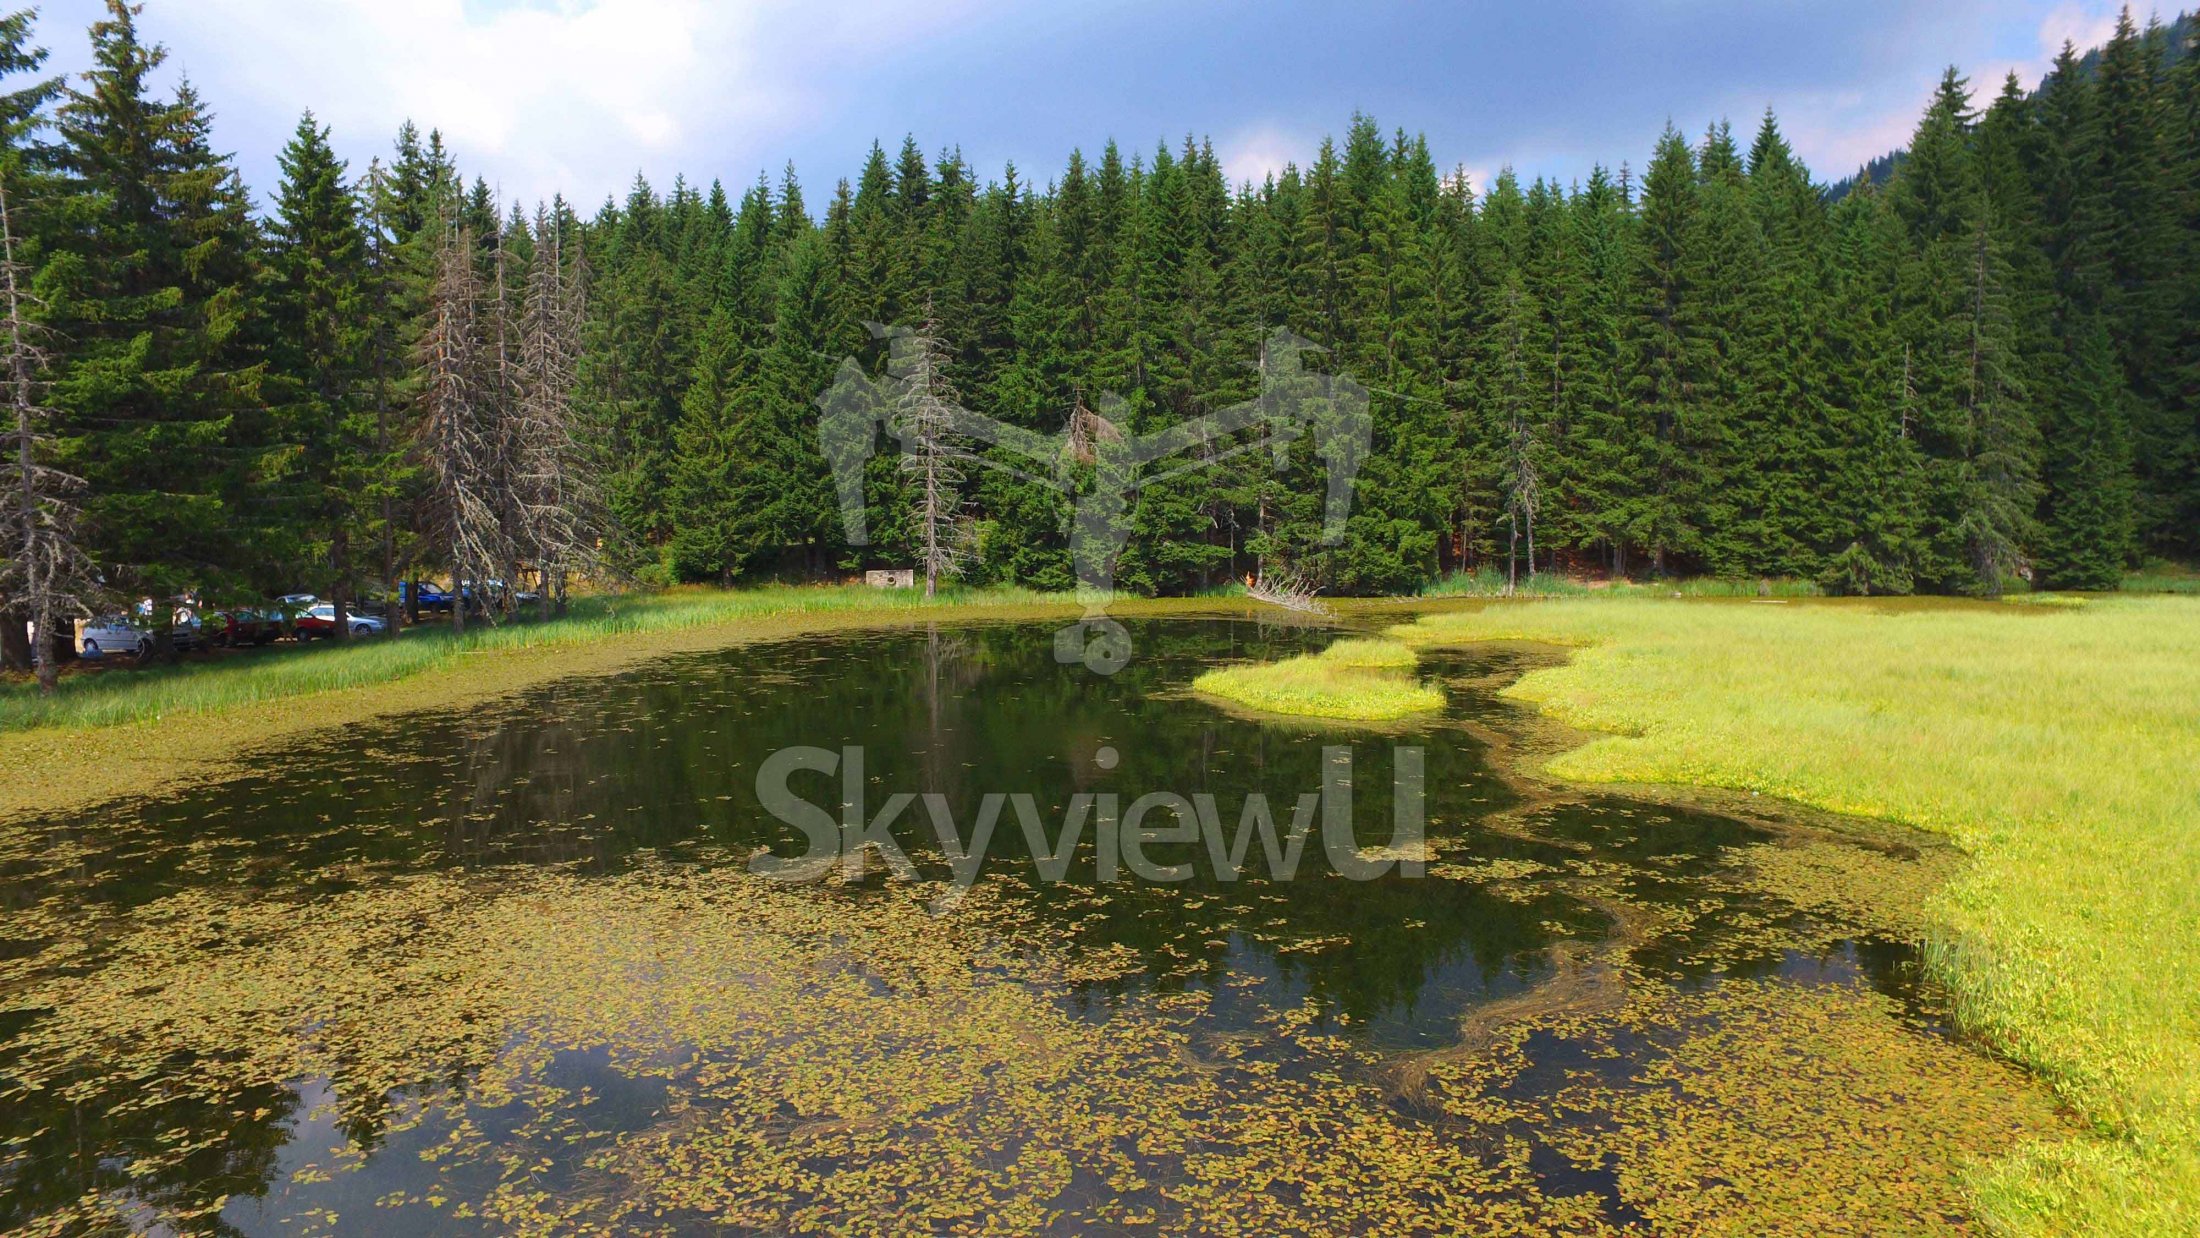 SkyvuewU-България-дрон-фотография-и-коптер-въздушно-заснемане-с-DJI-Inspire-1-на-забележителности-,-природа-,-исторически-местности-,-пейзажи-,-туристически-обекти-и-национални-красоти2